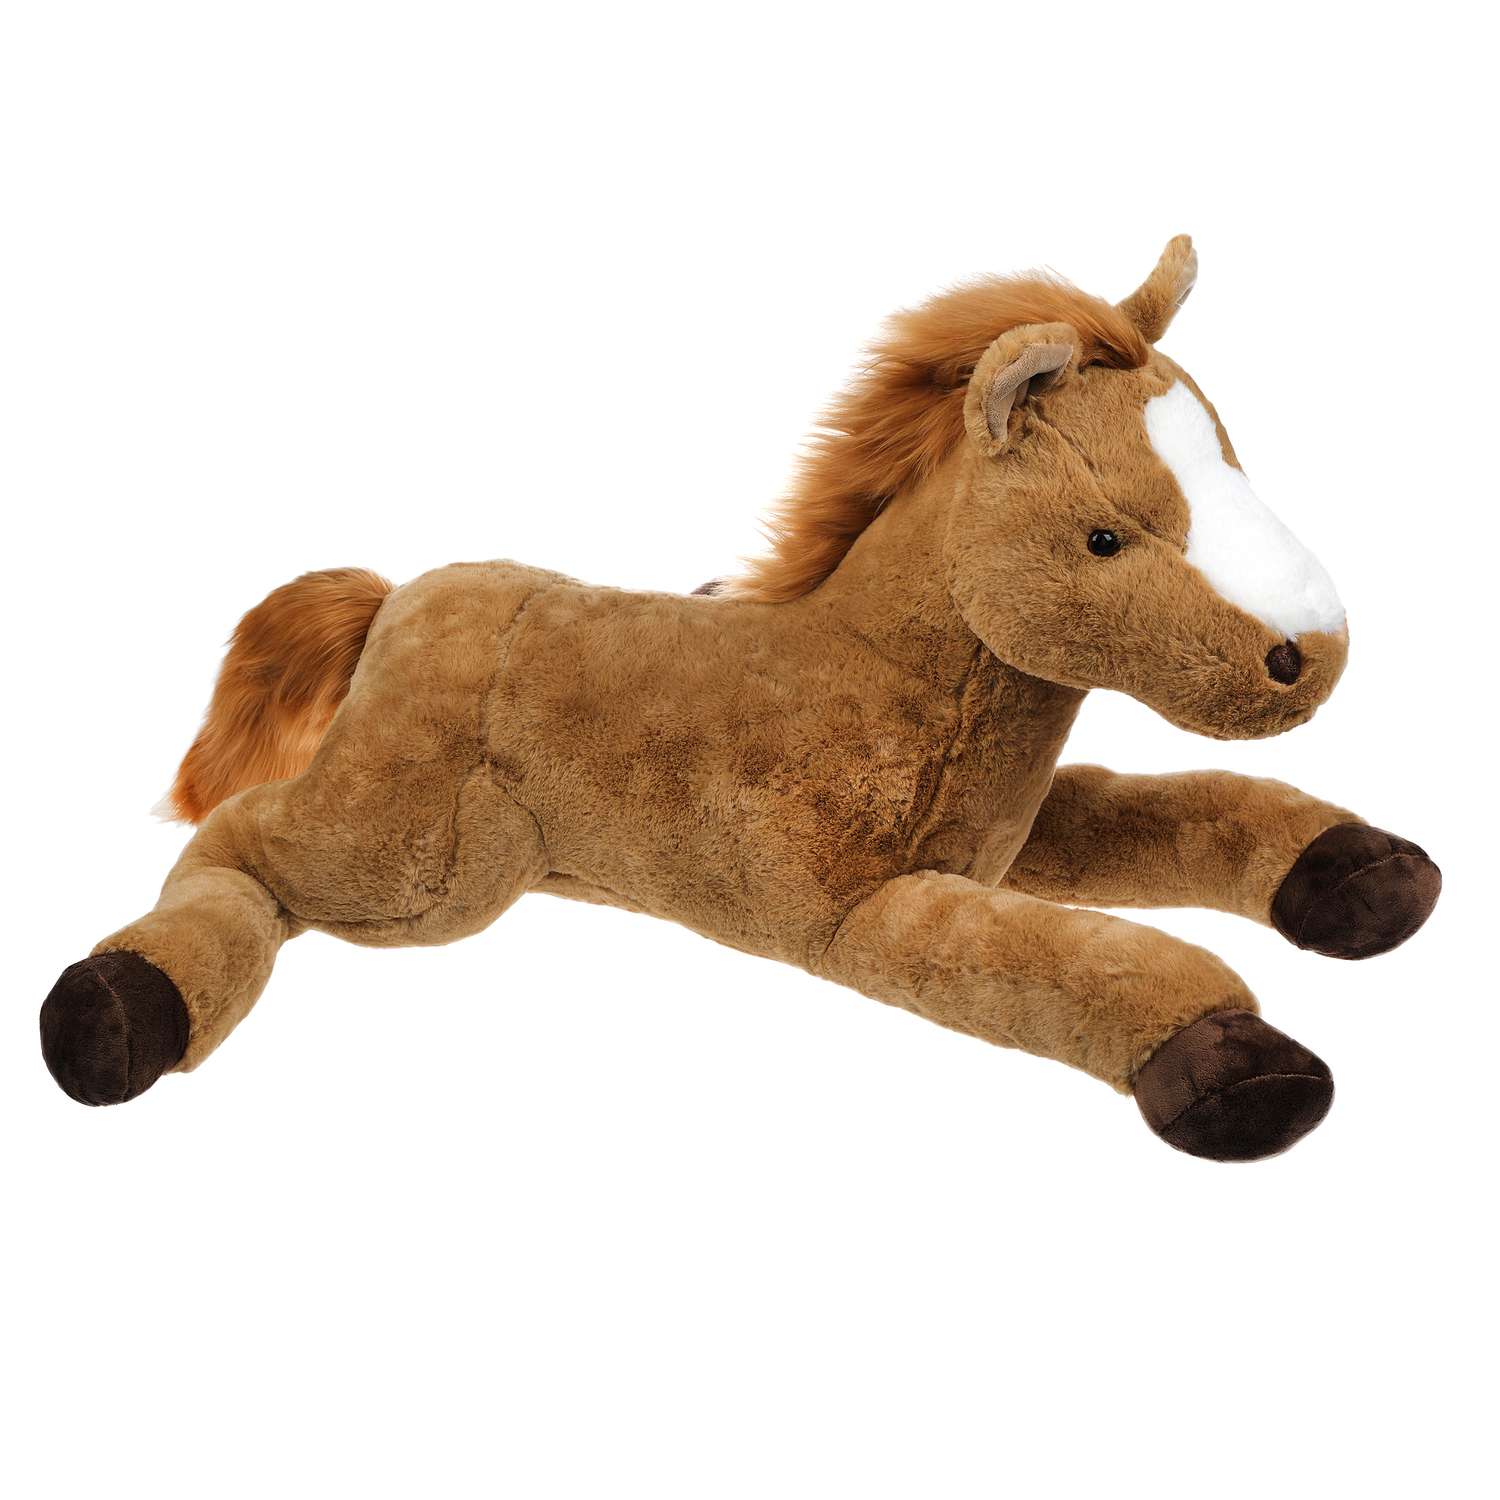 Мягкая игрушка - лошадка с желтым одеялом, 20 см, бежевый, полиэстер (D1228319-1)